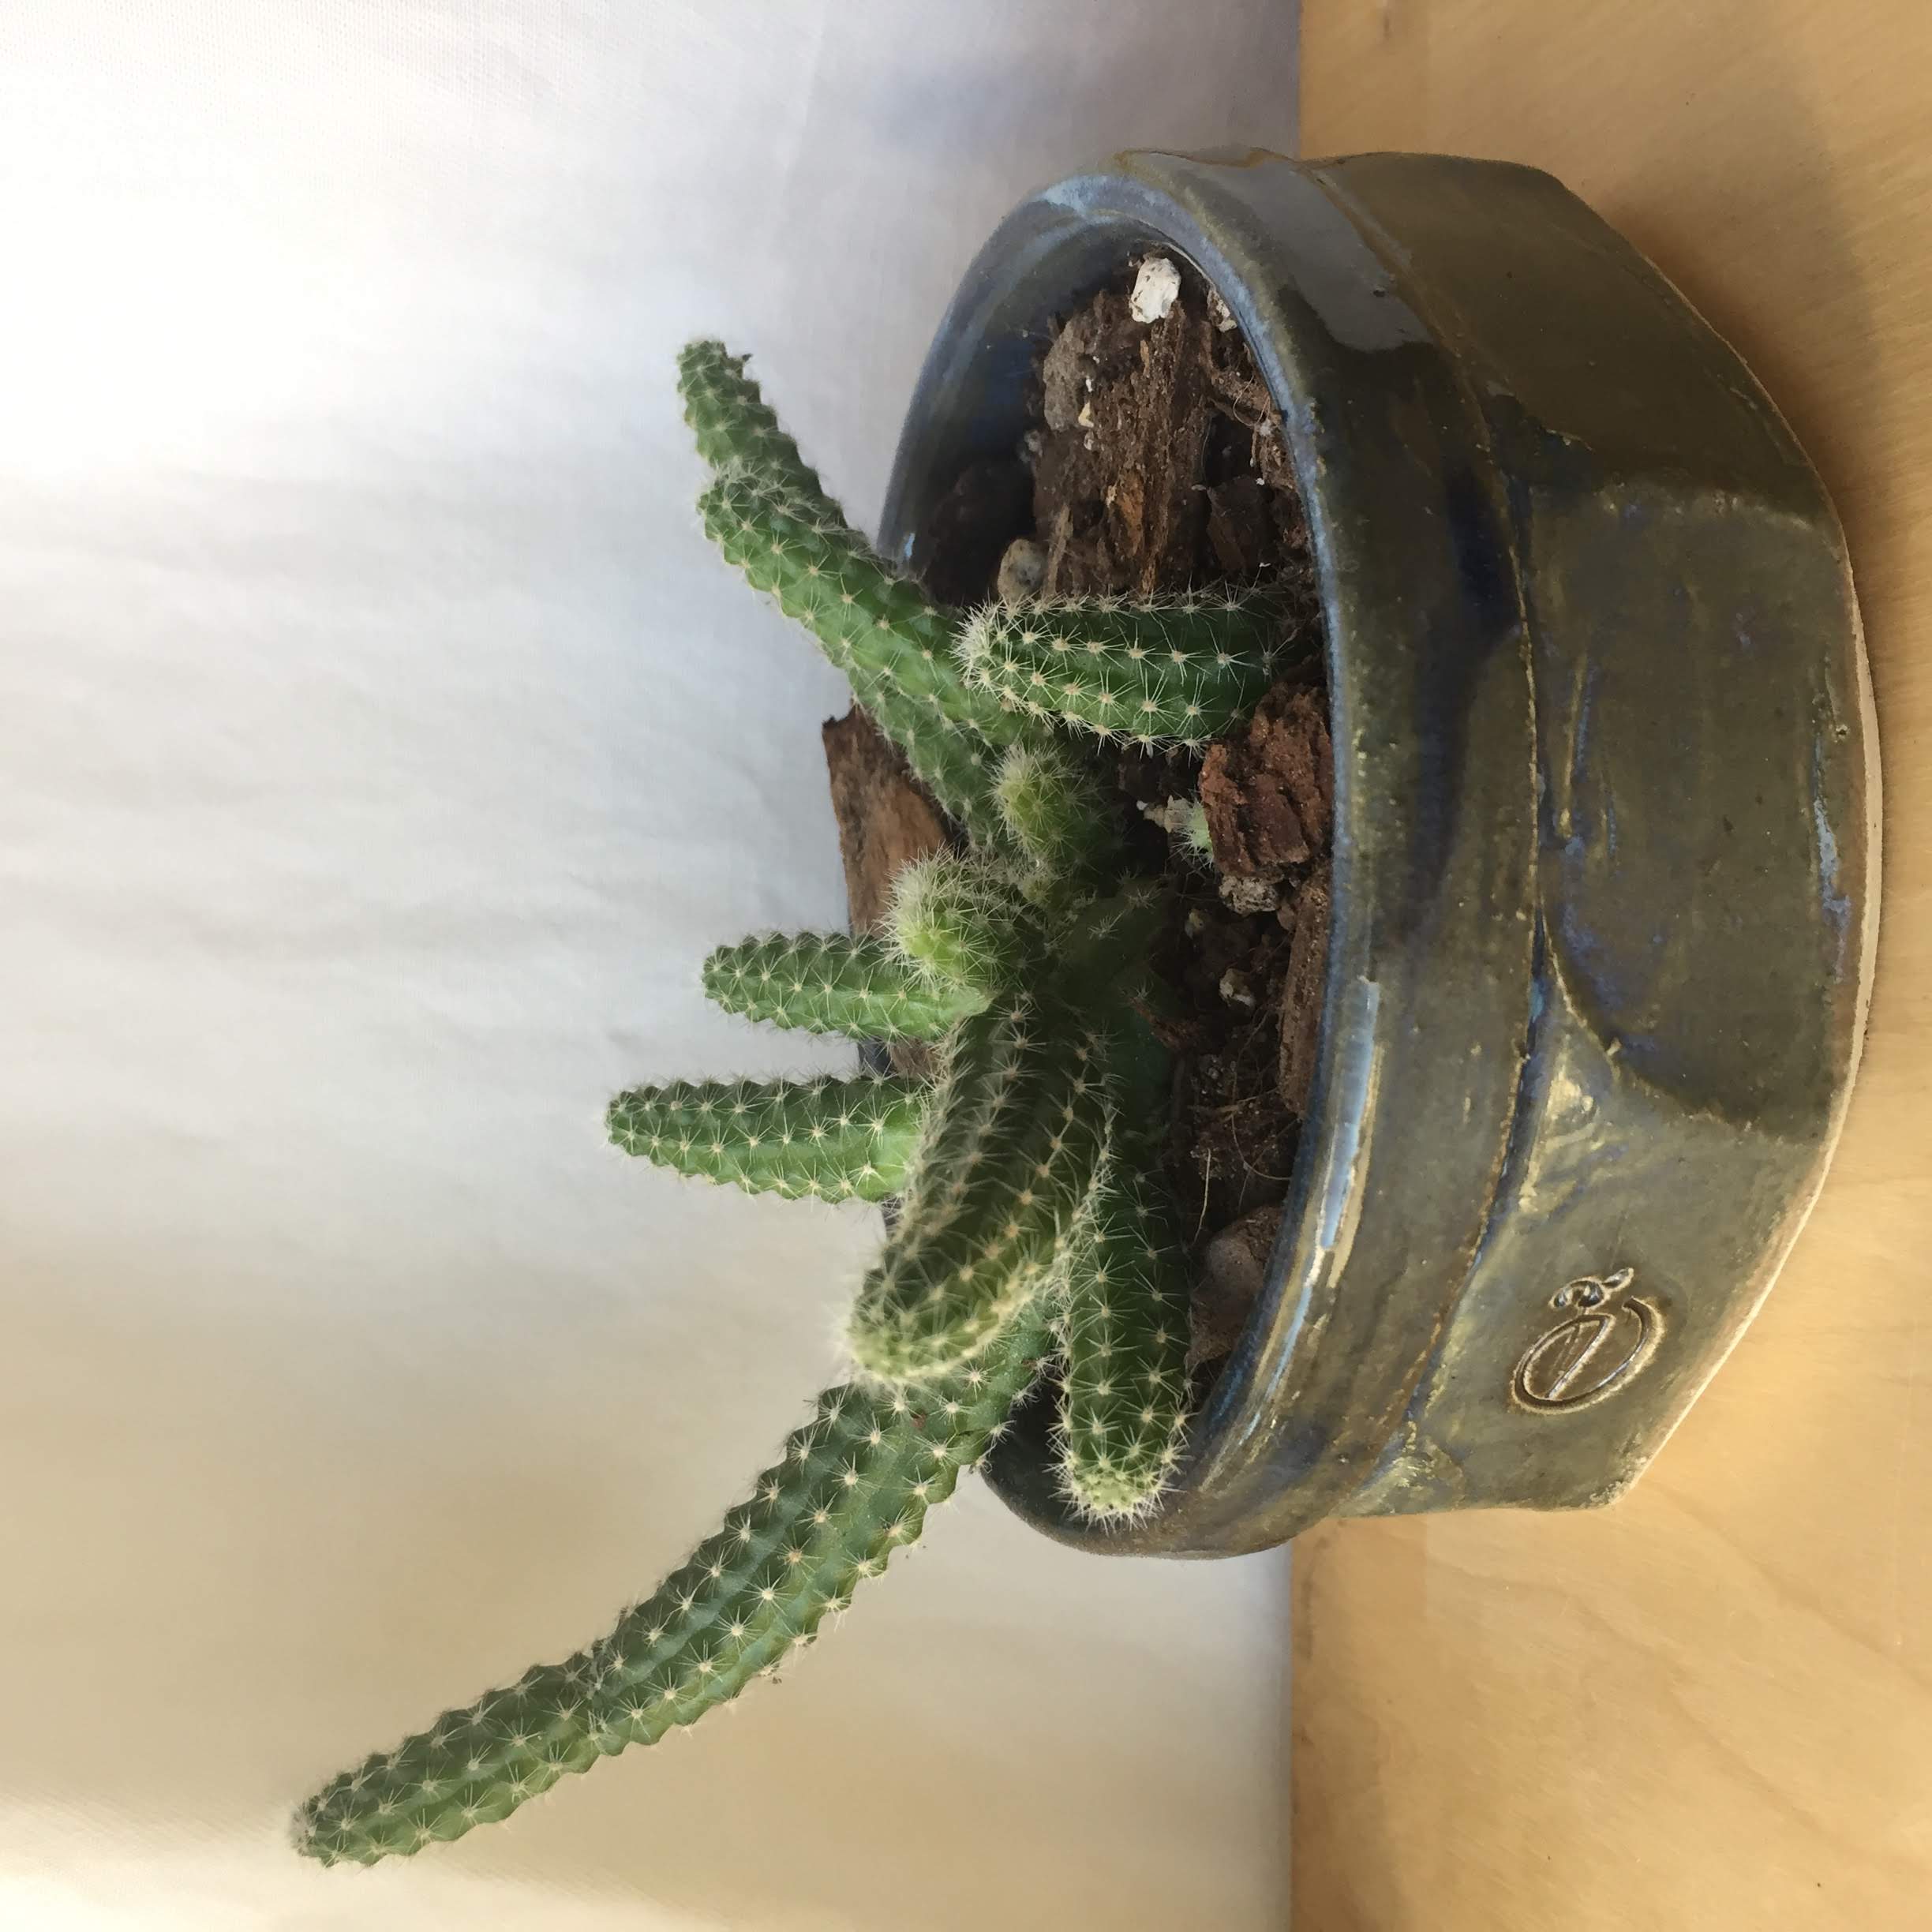 Peanut cactus in planter